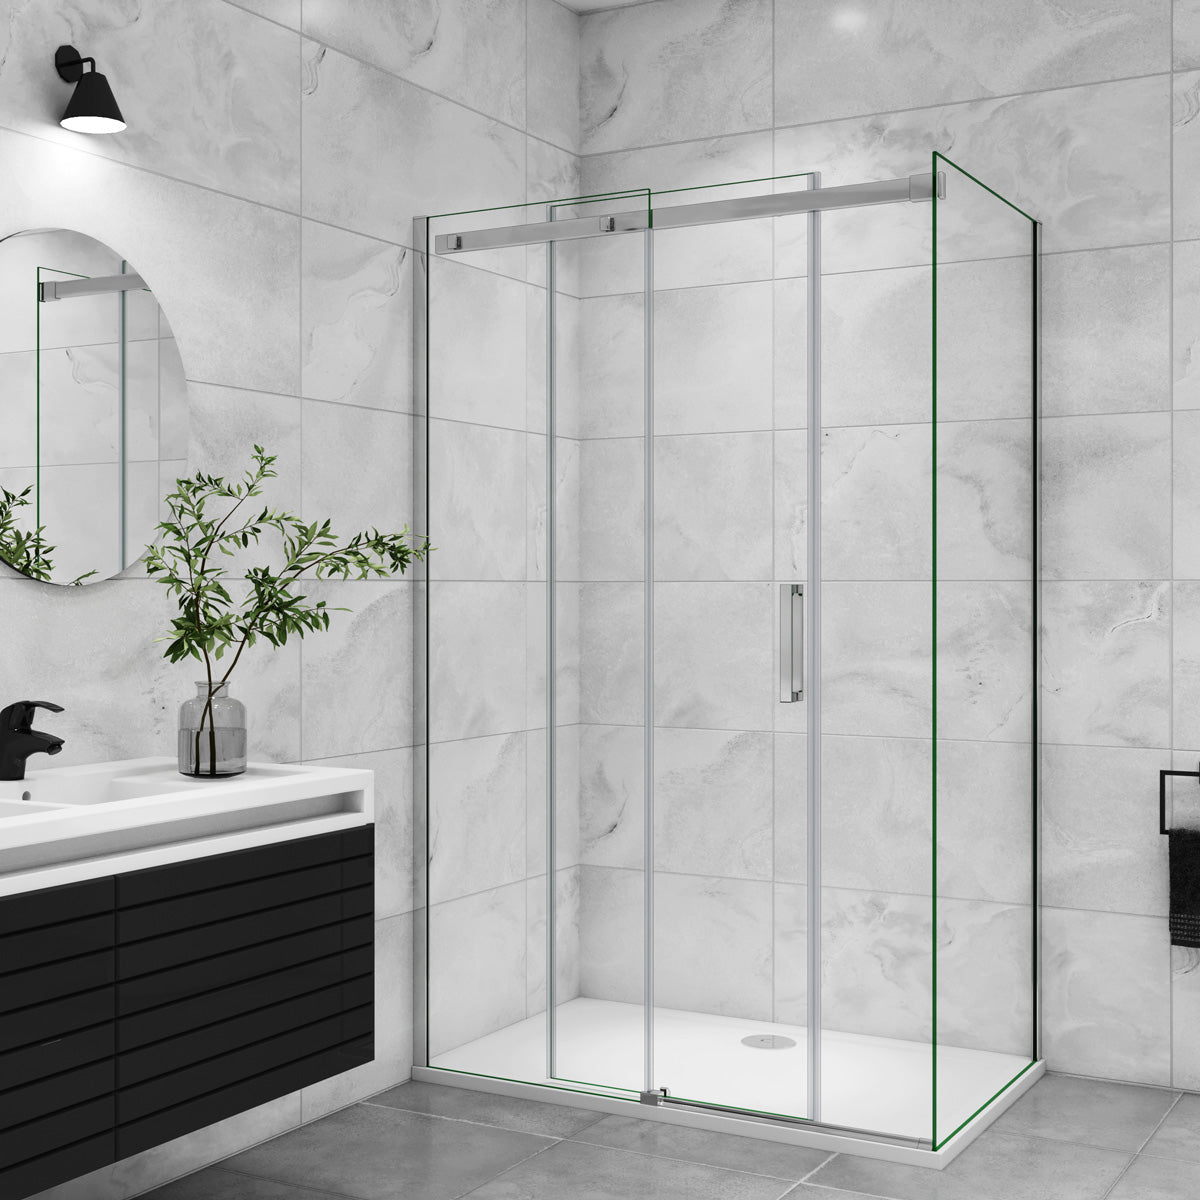 Duschtür+Seitenwand Schiebetür 110x90 cm Glasstärke 8mm Dusche Duschabtrennung Duschkabine